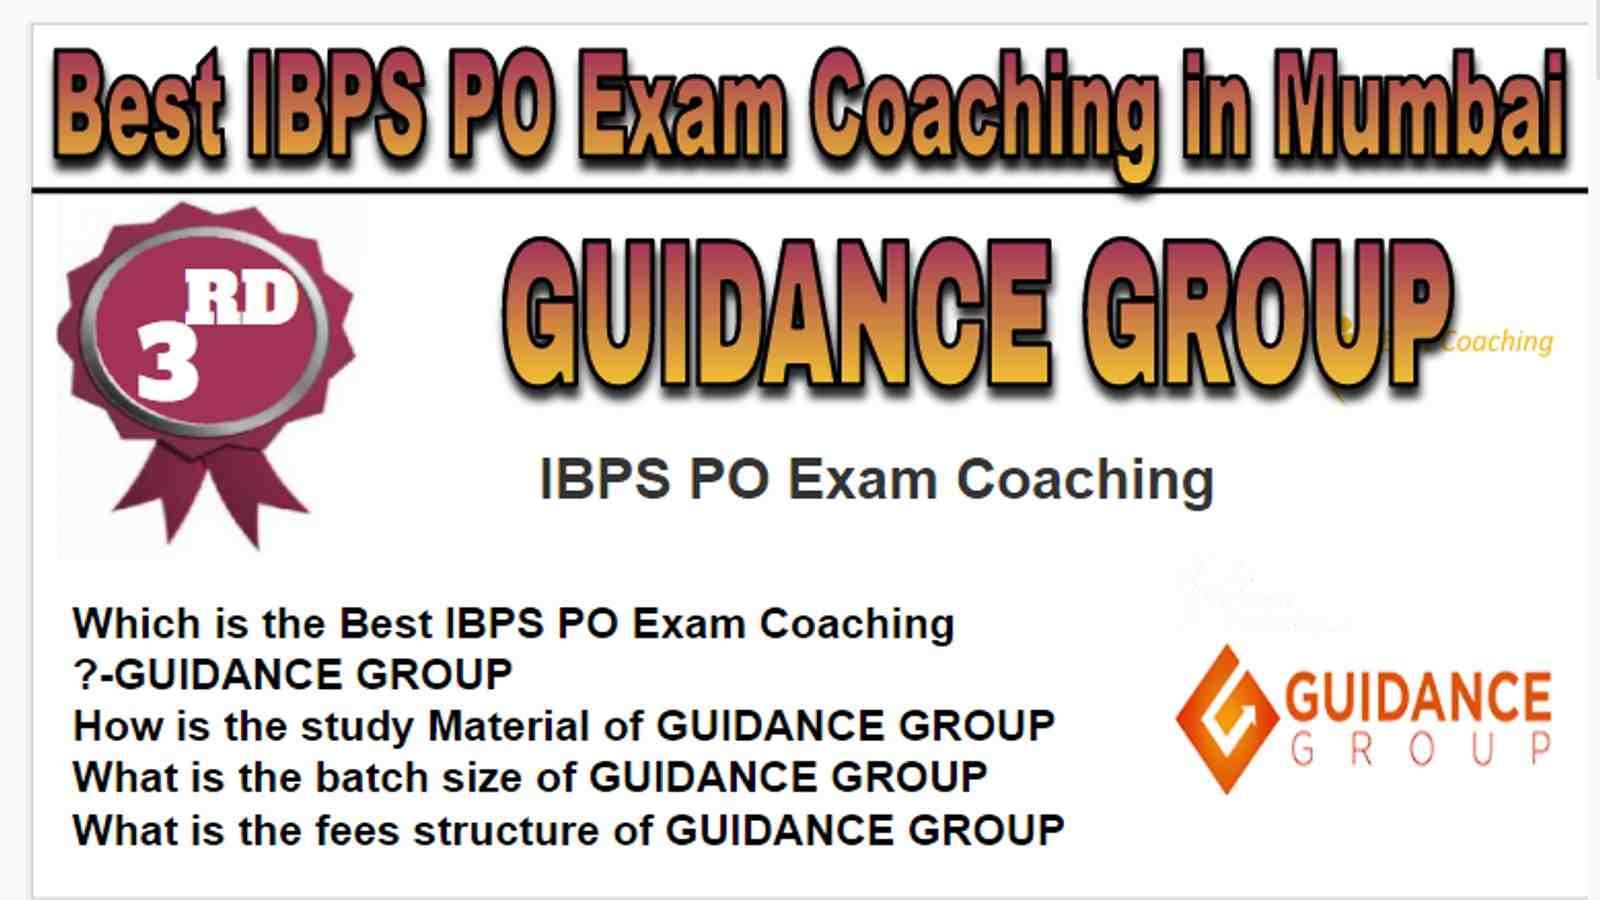 Rank 3 Best IBPS PO Exam Coaching in Mumbai